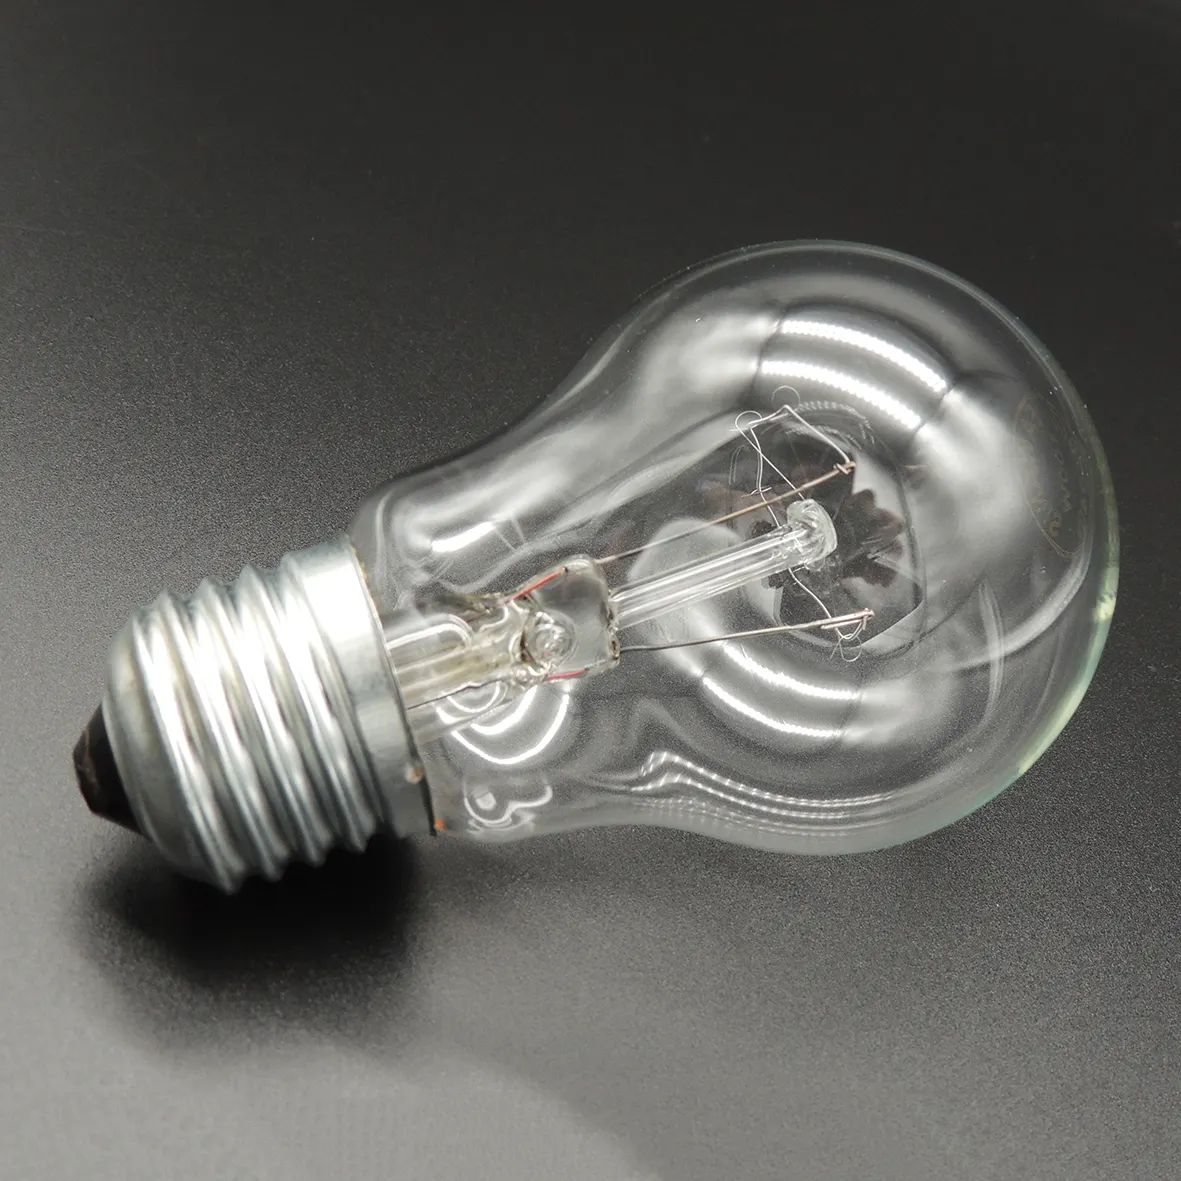 הנמכר ביותר באיכות גבוהה 110v 220v E27 75w 100w 150w 200w e27 A19 מנורת הנורה אור ליבון אדיסון הנורה